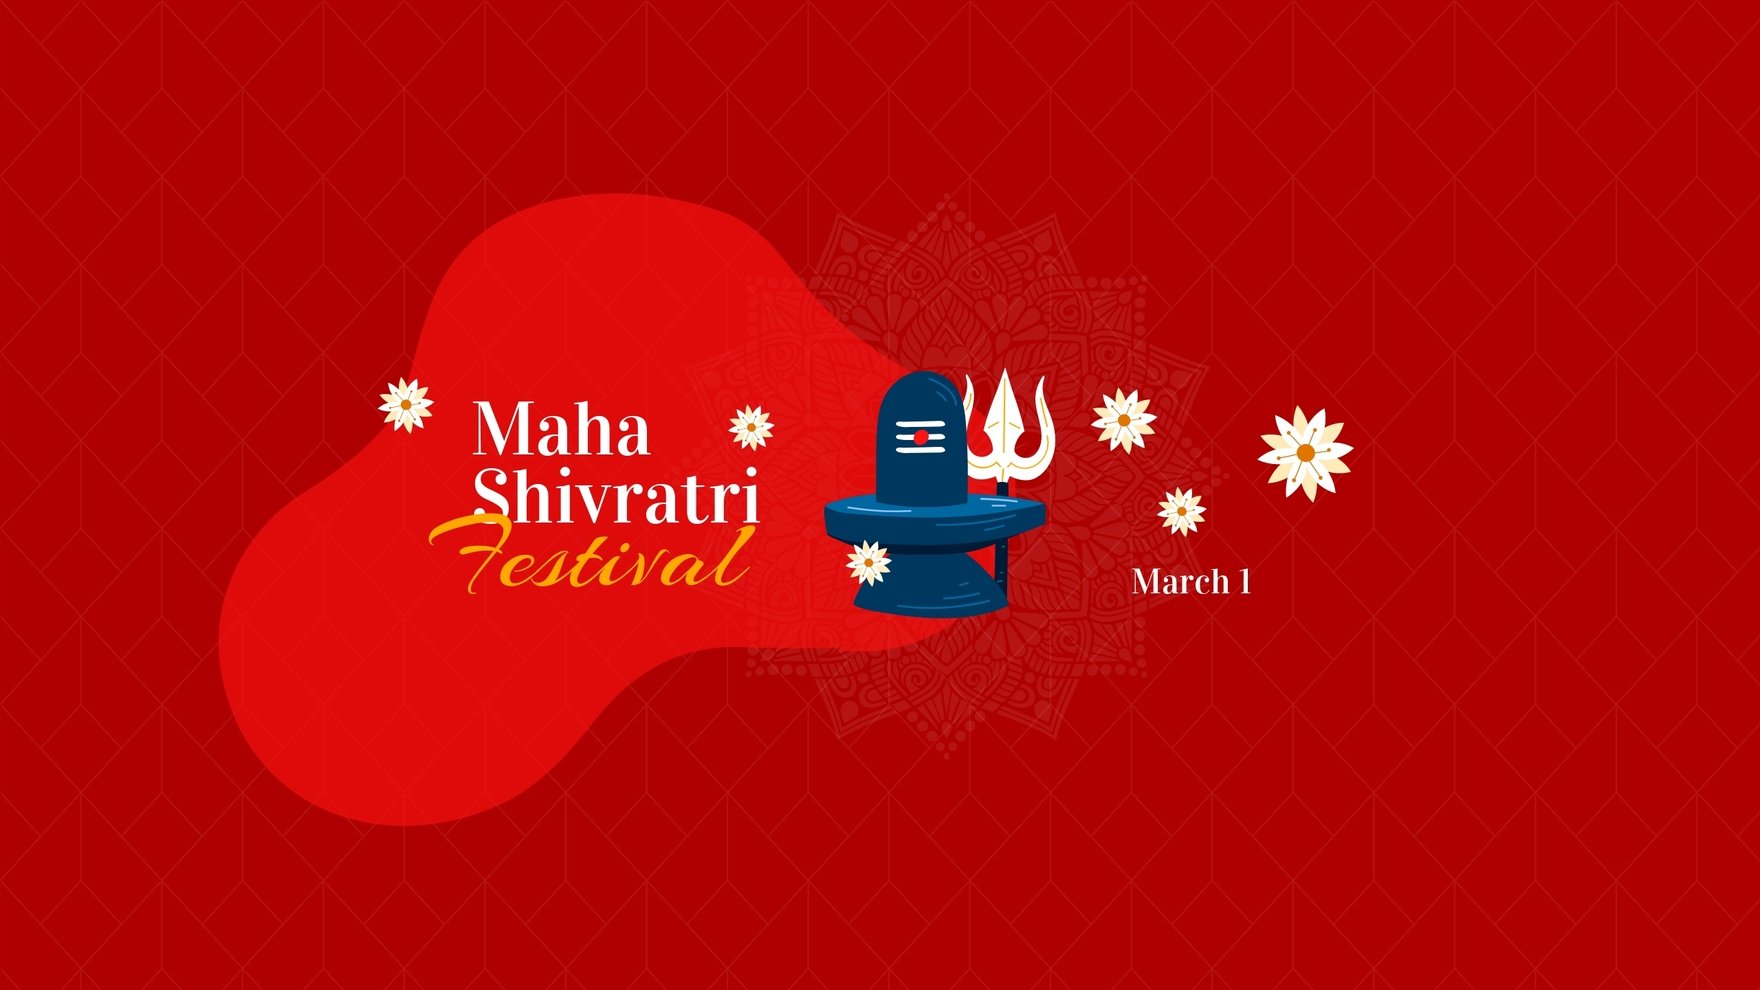 Maha Shivratri Templates - Design, Free, Download 